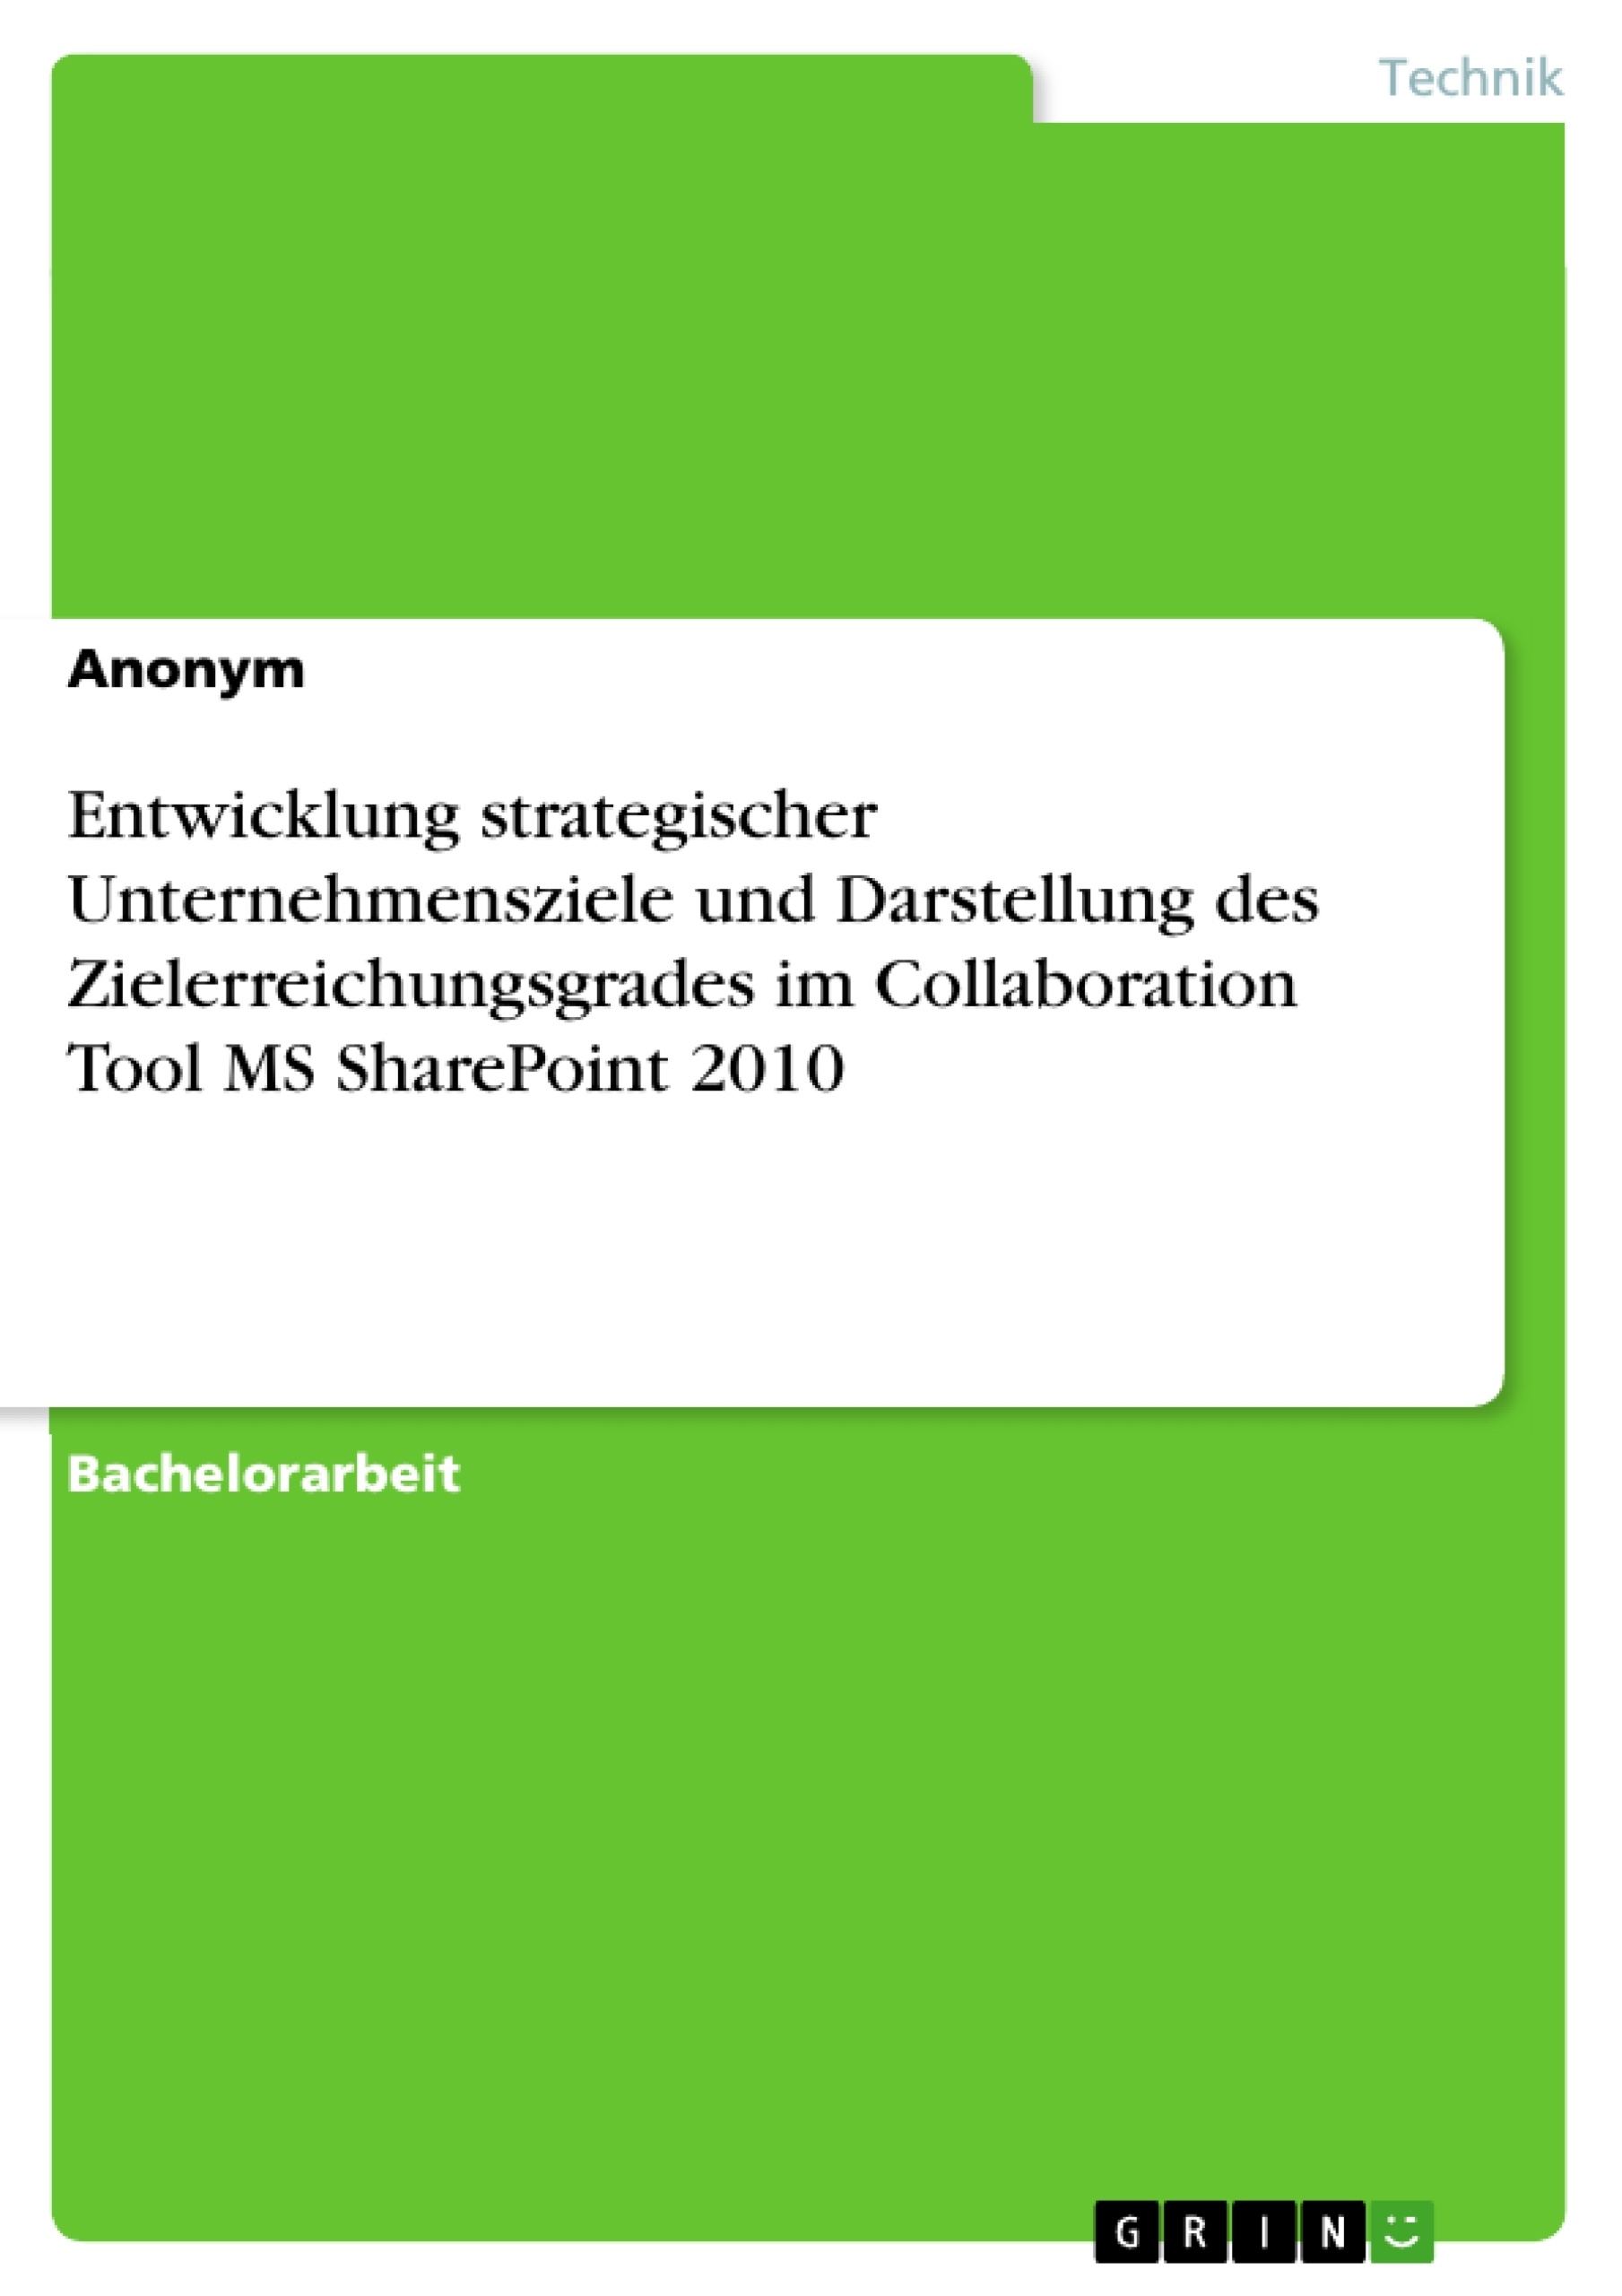 Título: Entwicklung strategischer Unternehmensziele und Darstellung des Zielerreichungsgrades im Collaboration Tool MS SharePoint 2010